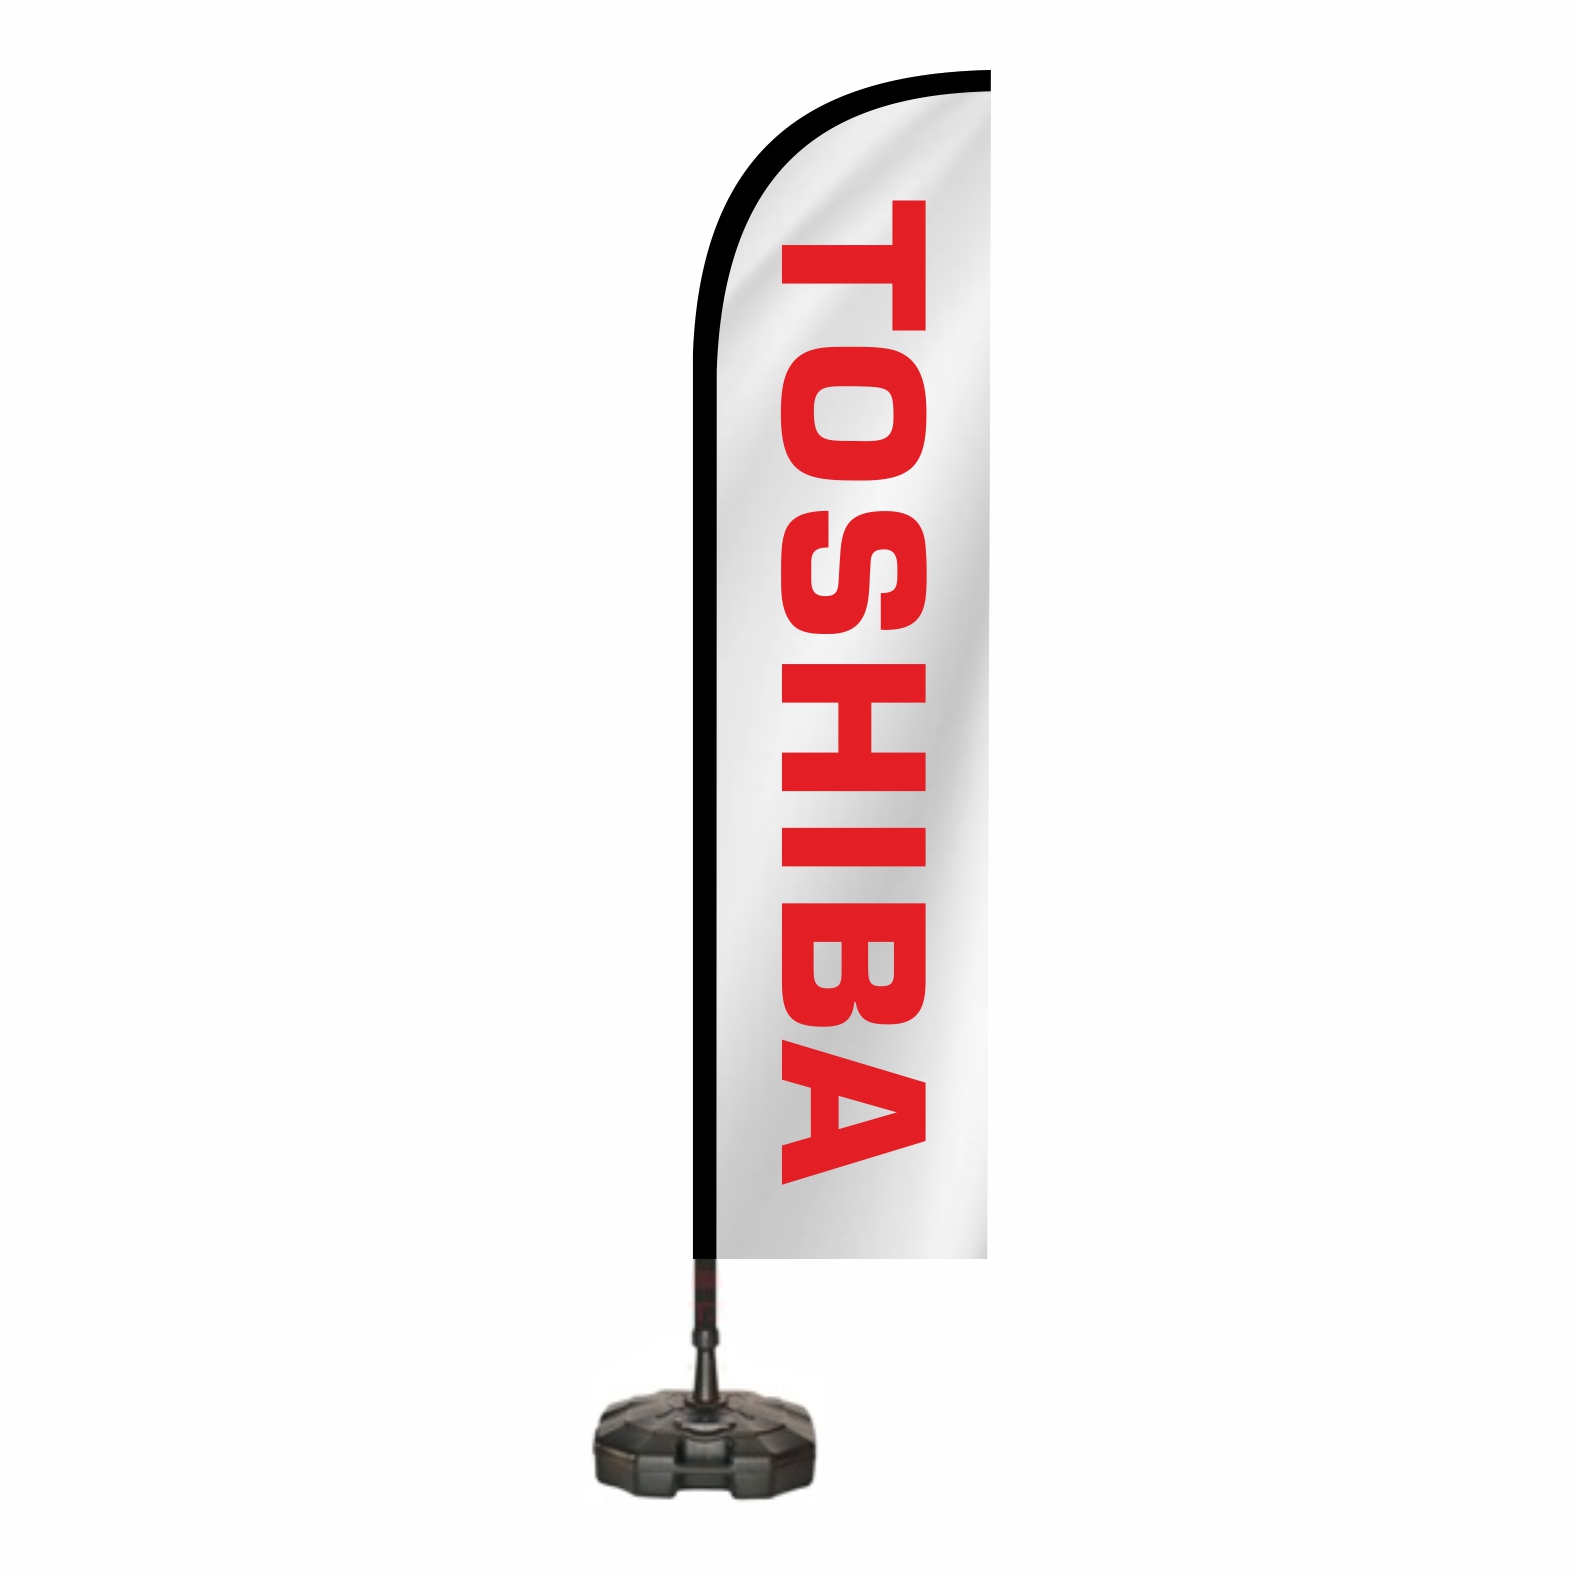 Toshiba Oltal bayraklar